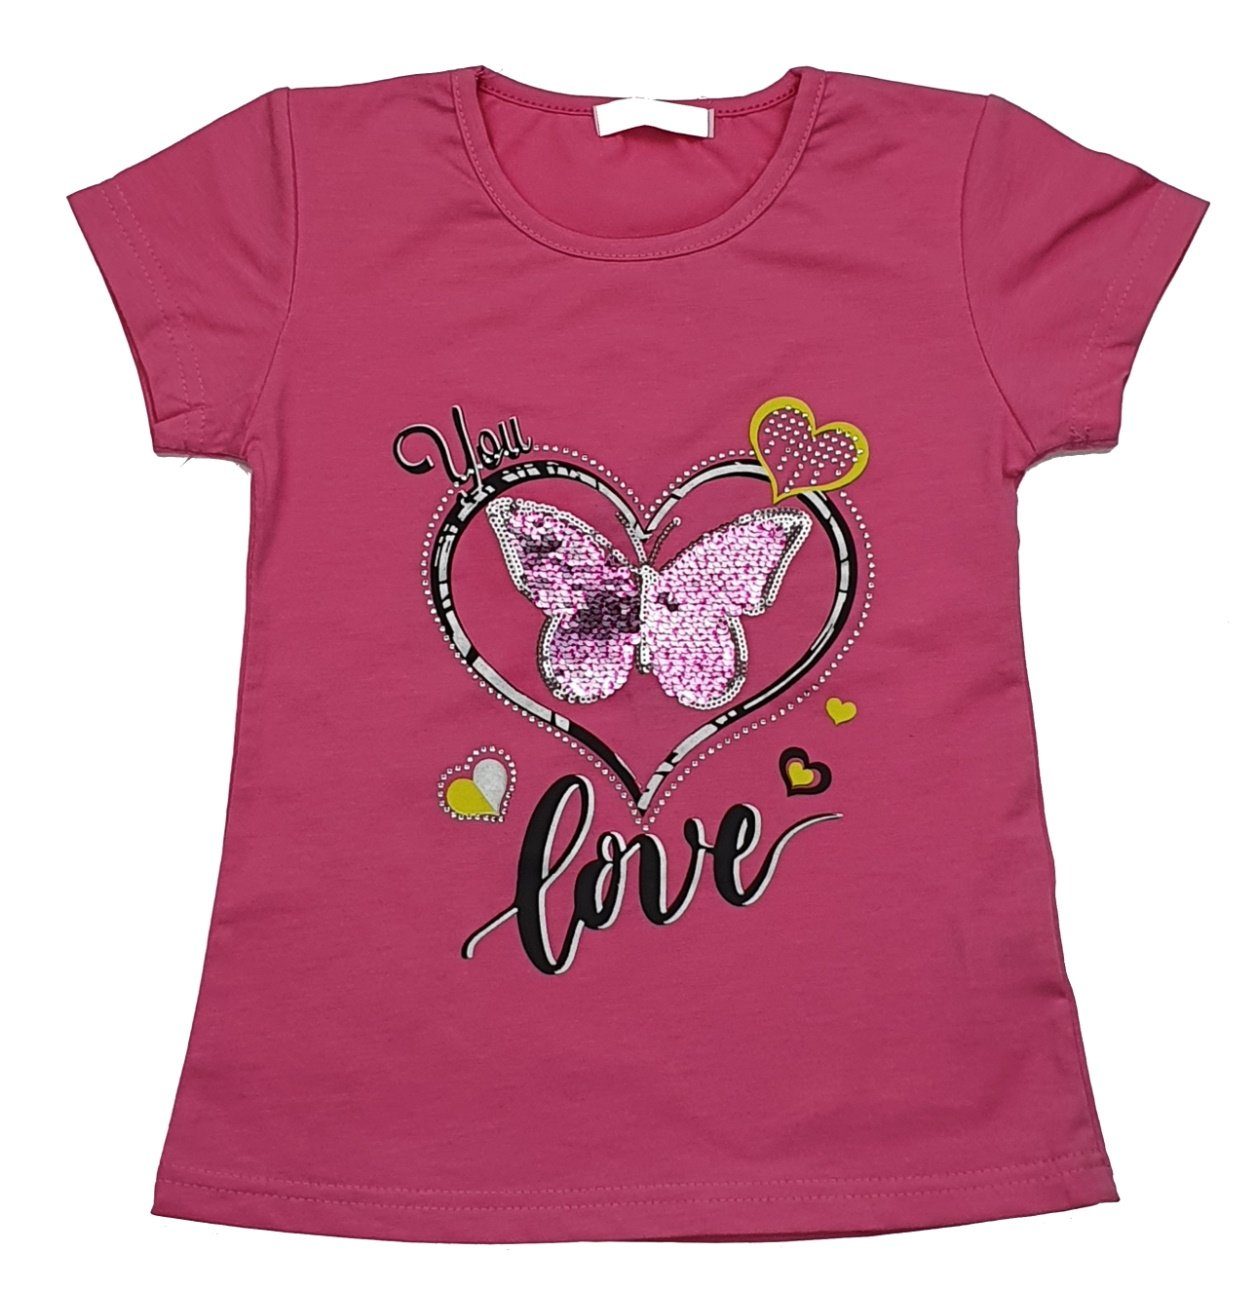 MS807 Mädchen Girls Pink T-Shirt T-Shirt Shirt Fashion Sommer